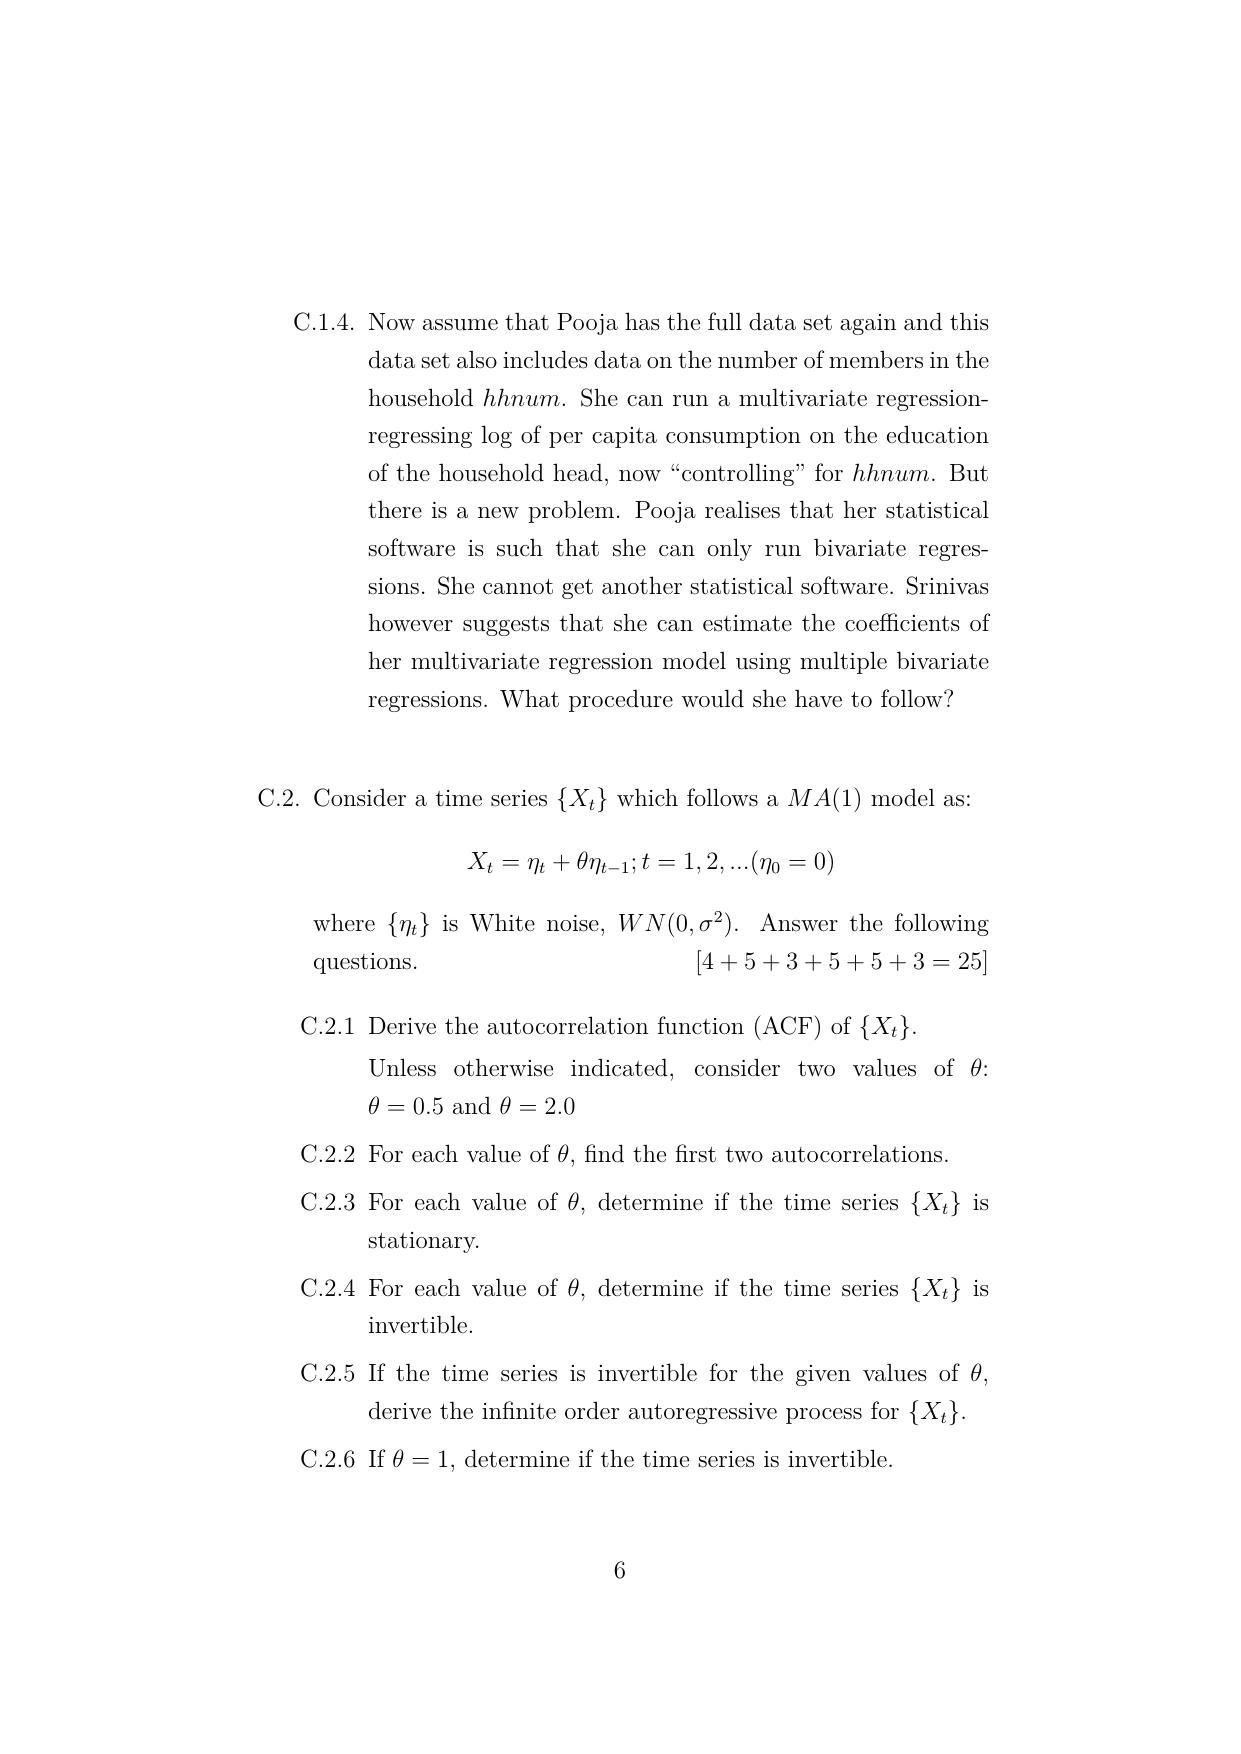 ISI Admission Test JRF in Quantitative Economics QEB 2022 Sample Paper - Page 6